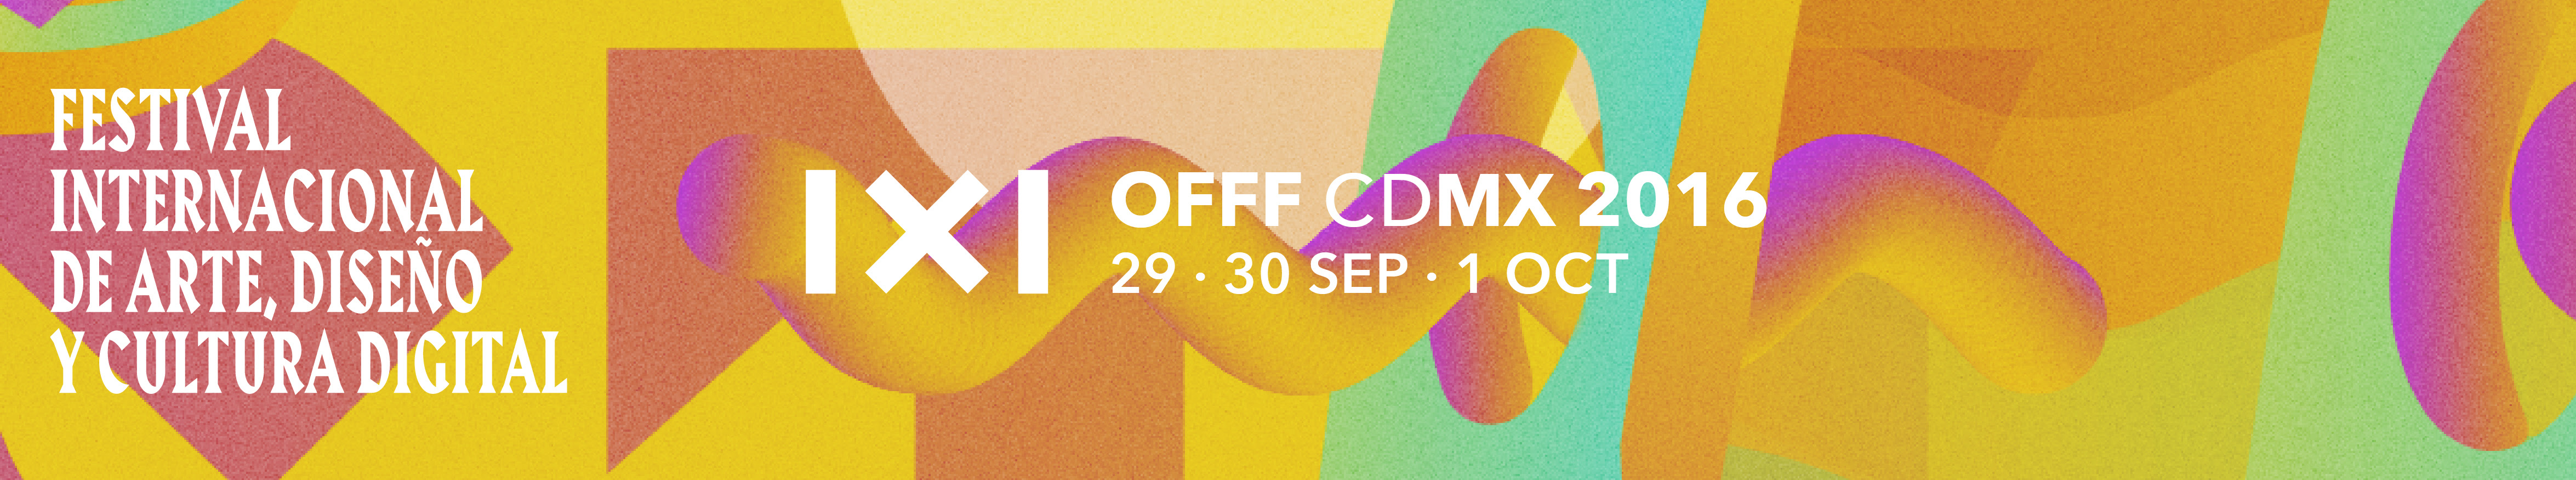 Festival Internacional de Arte, Diseño y Cultura Digital OFFF CDMX 2016